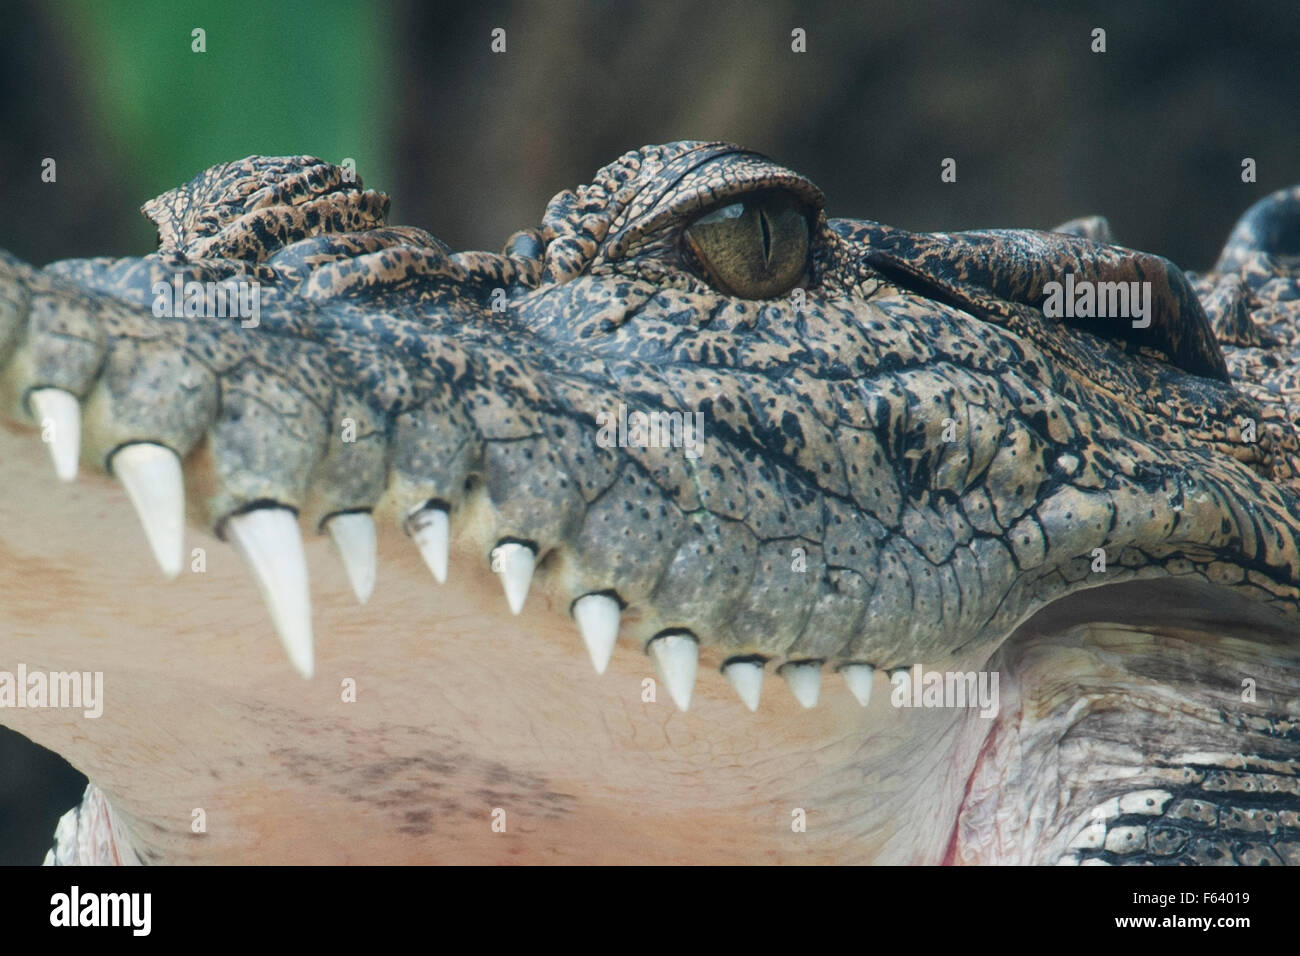 El cocodrilo de agua salada, Crocodylus porosus, (C), peregrinos, bostezar, mostrando los ojos, boca y dientes, Asia. Foto de stock